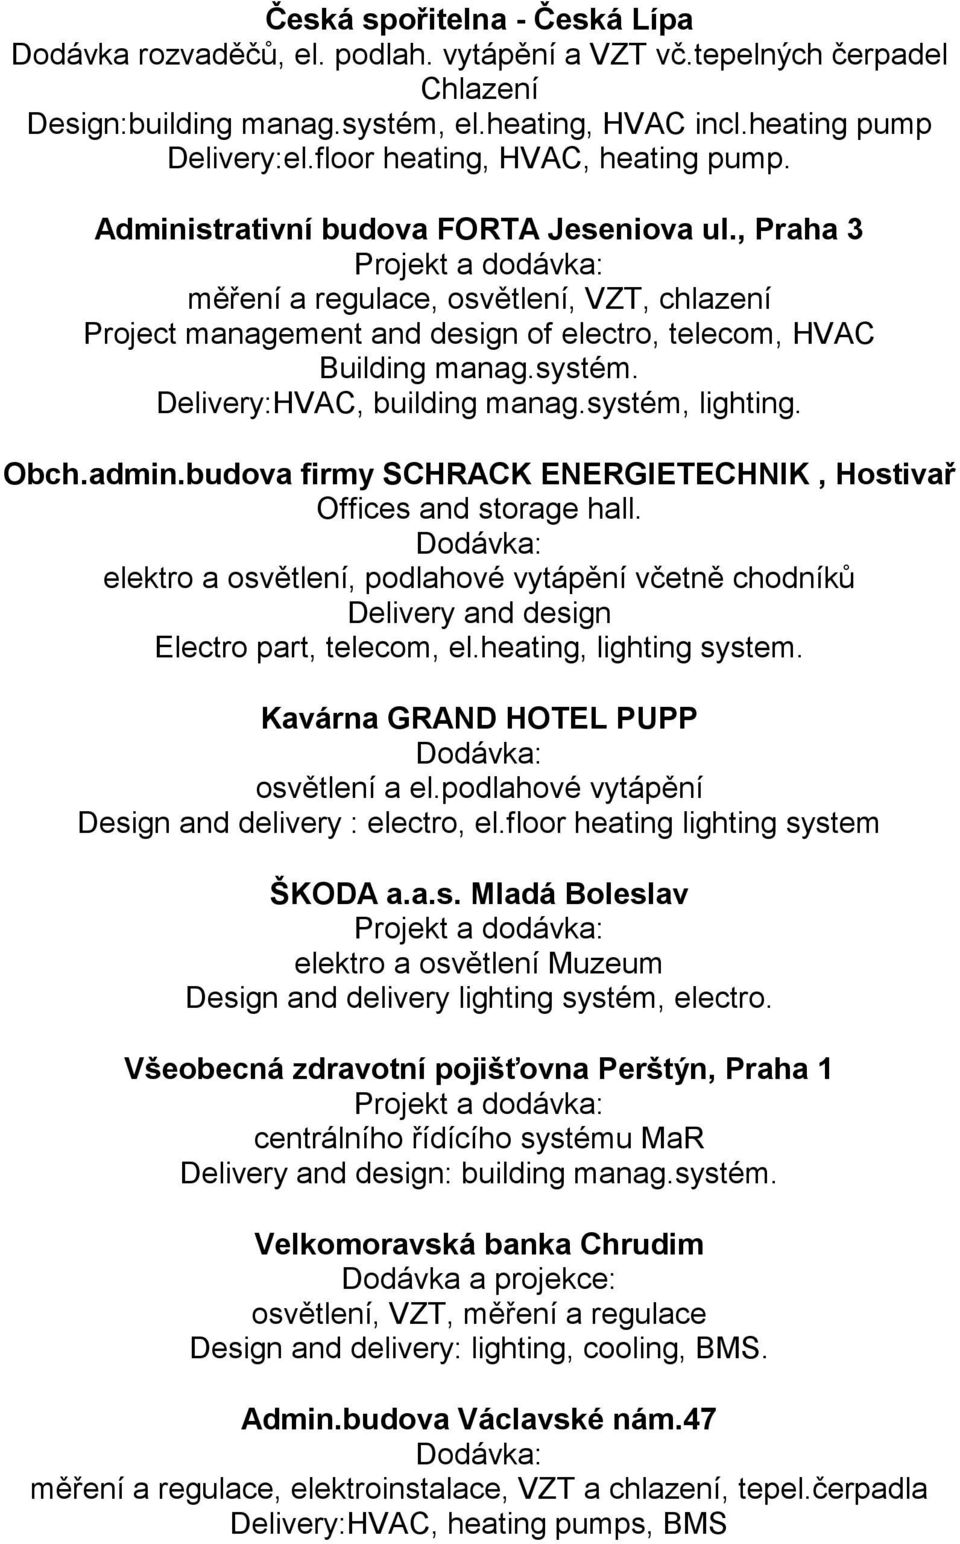 , Praha 3 Projekt a dodávka: měření a regulace, osvětlení, VZT, chlazení Project management and design of electro, telecom, HVAC Building manag.systém. Delivery:HVAC, building manag.systém, lighting.